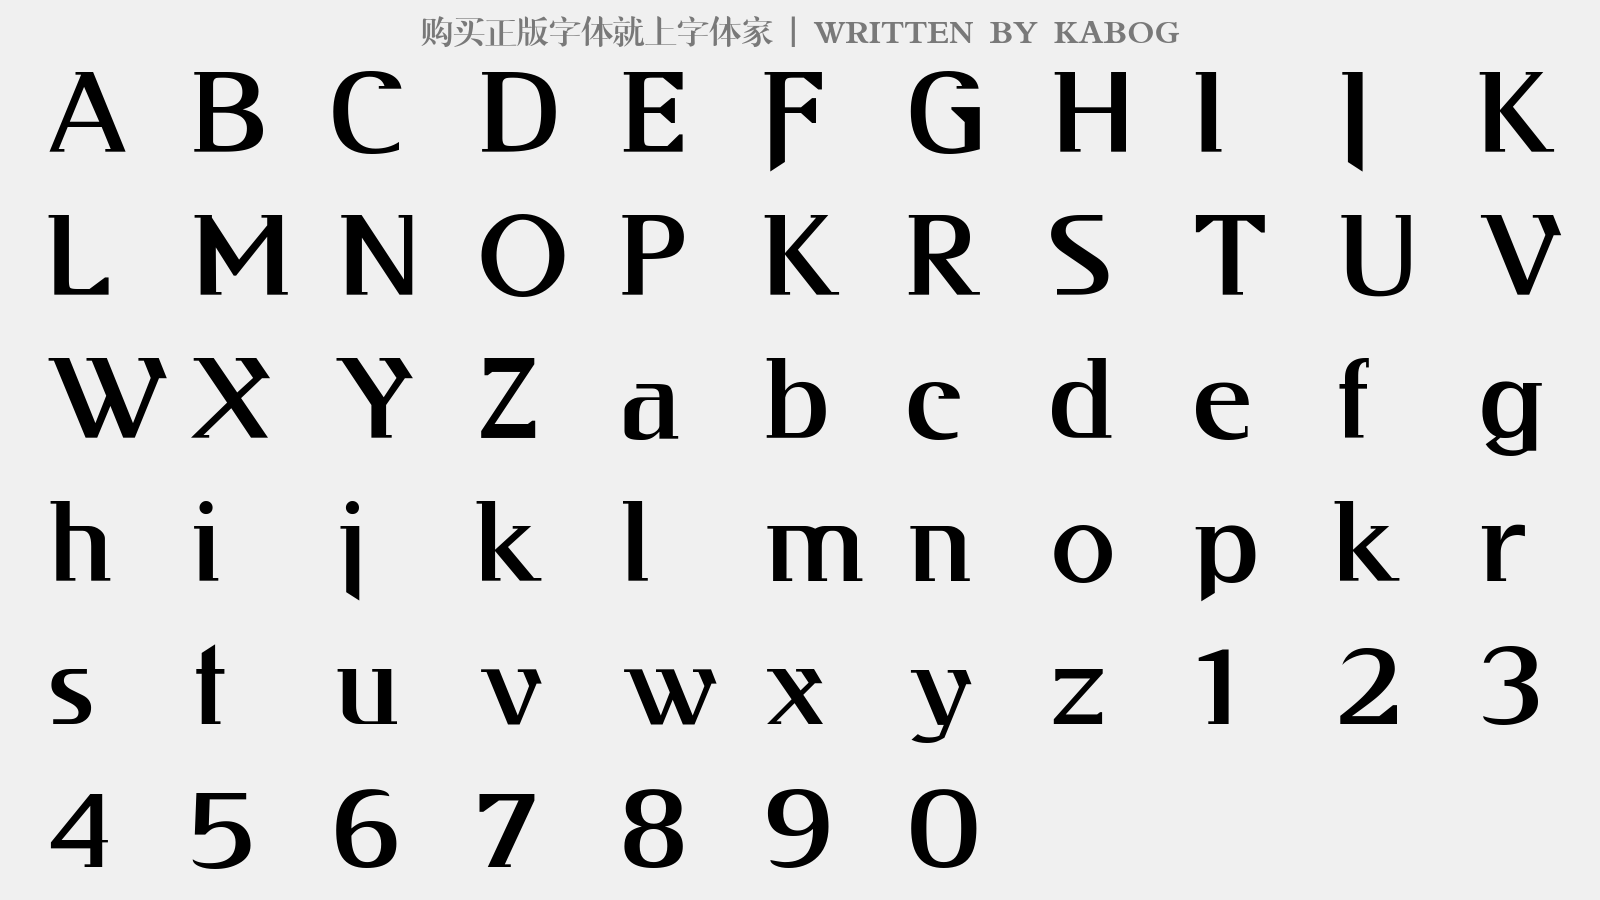 KABOG - 大写字母/小写字母/数字